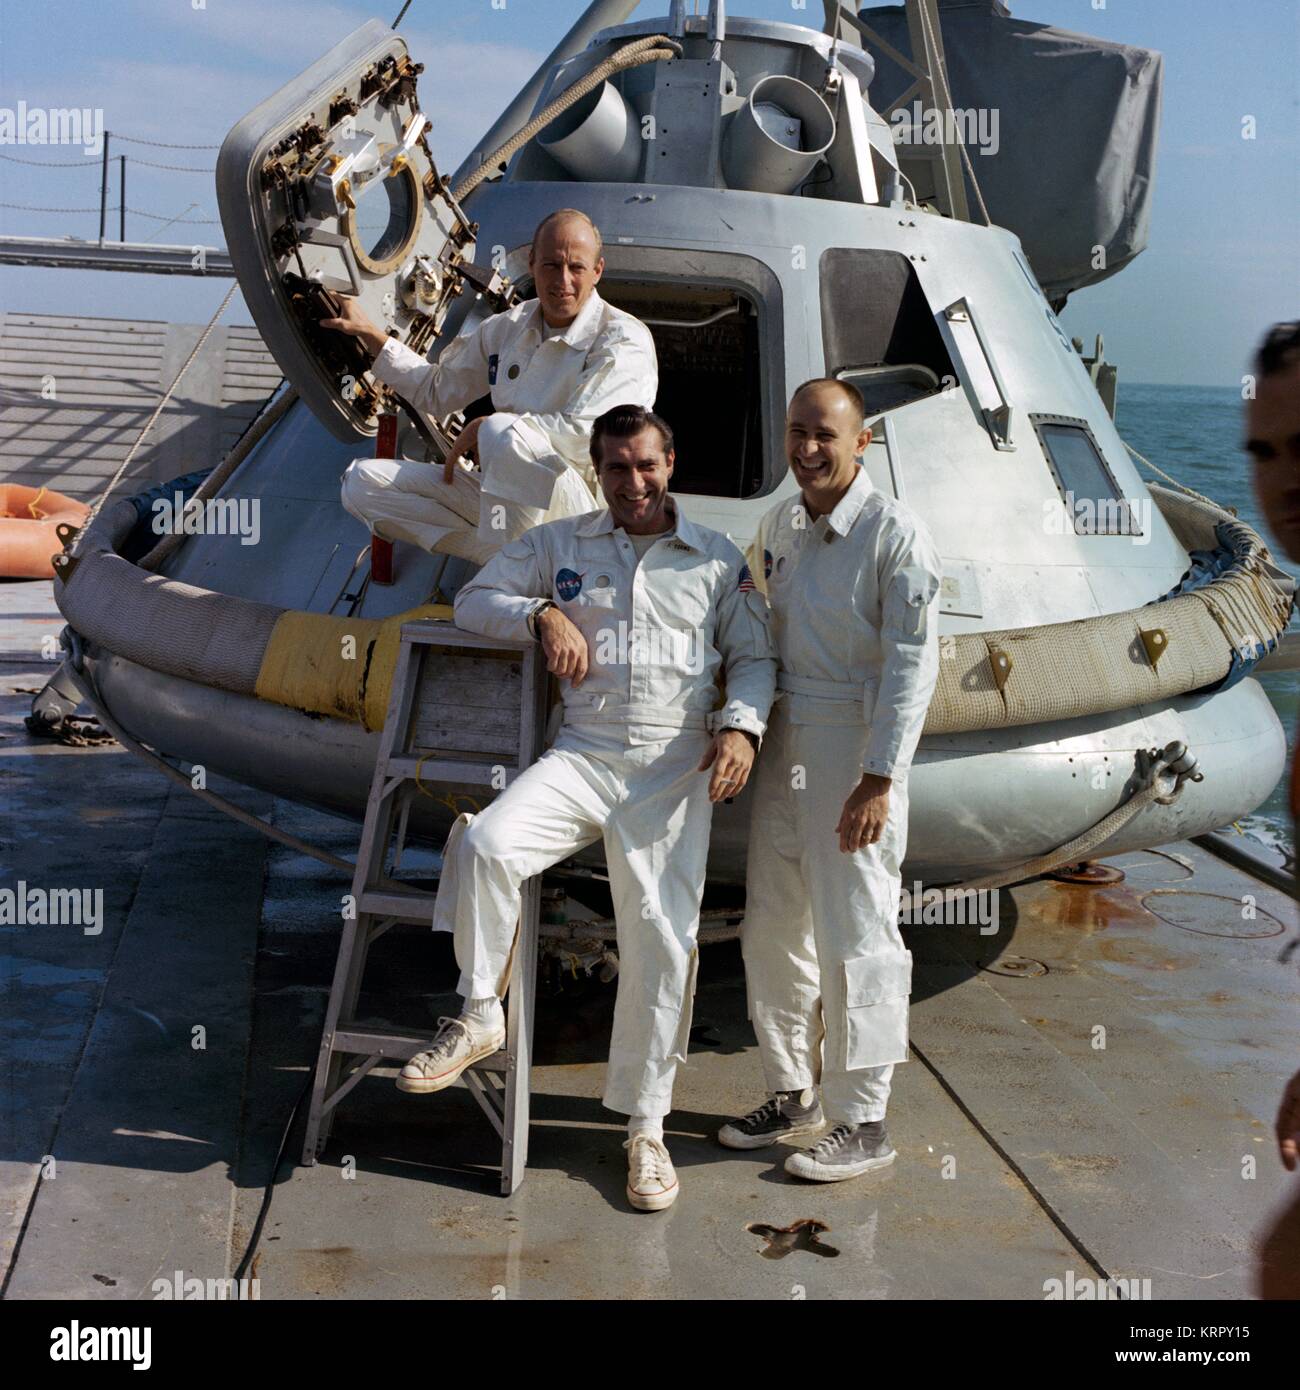 9 Apollo de la NASA mission orbitale lunaire de l'équipage de sauvegarde des astronautes américains Charles Pete Conrad Jr. (à gauche), Richard Gordon Jr., et Alan Bean se tenir sur le pont du module de commande Apollo formateur avant l'évacuation de l'eau 5 Novembre 1968 Formation dans le golfe du Mexique. Banque D'Images